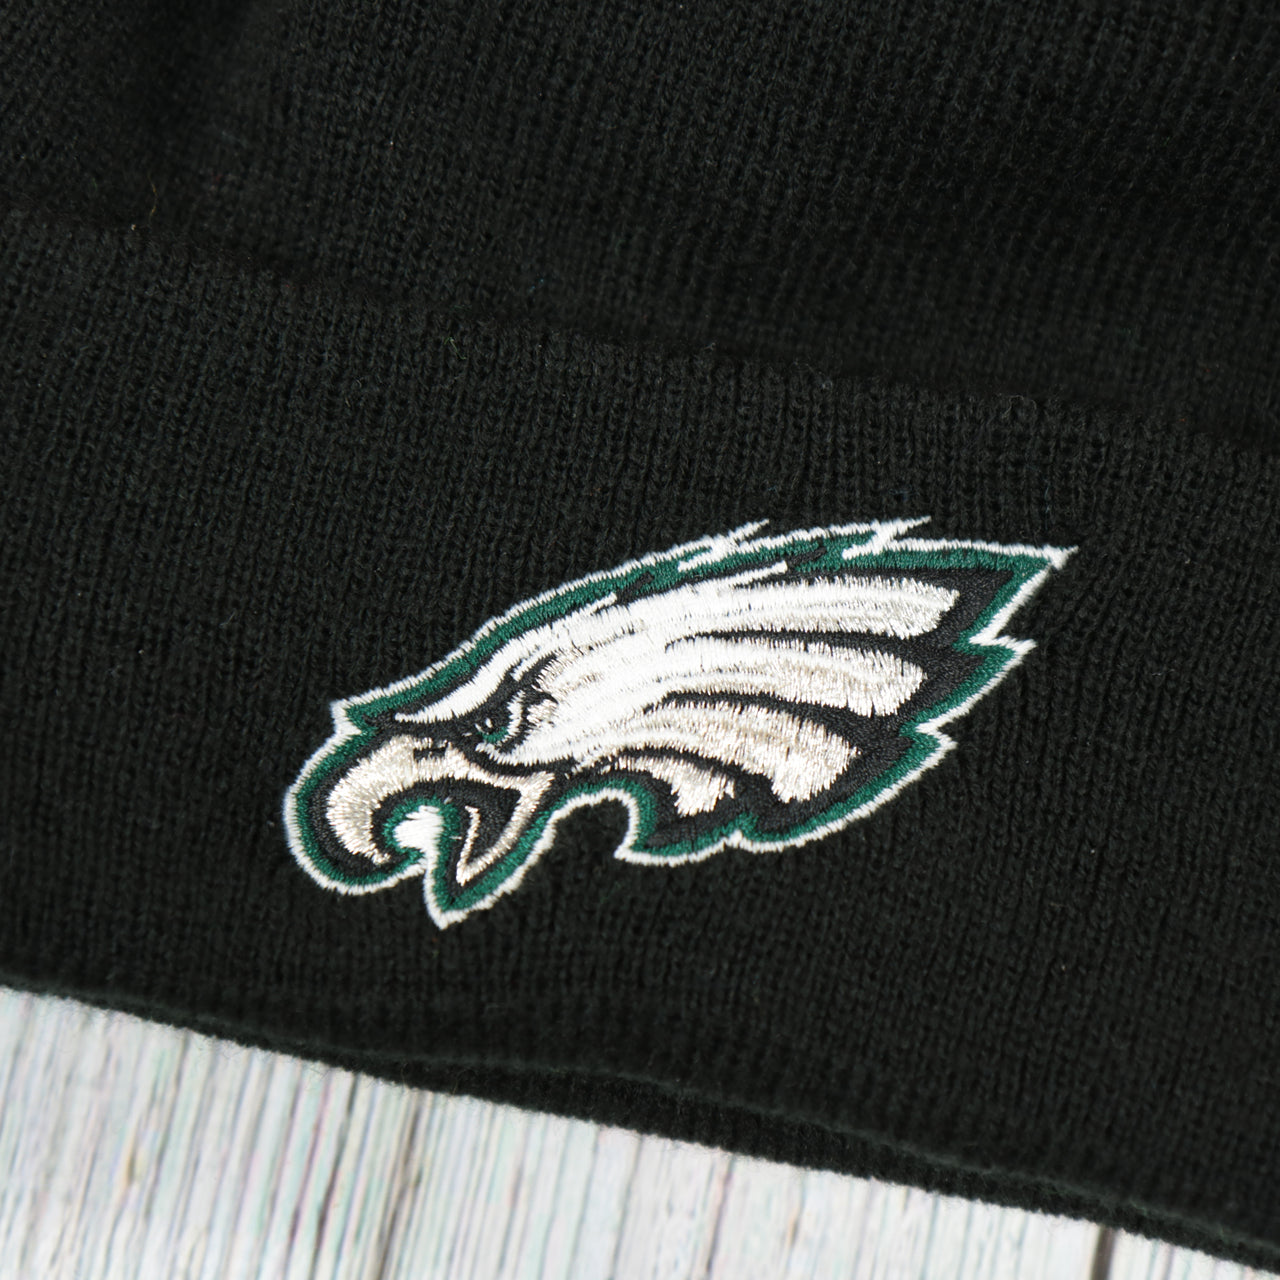 eagles logo on the Philadelphia Eagles Super Bowl LII Patch Pom Pom Beanie | Midnight Green, Black, And White Striped Beanie